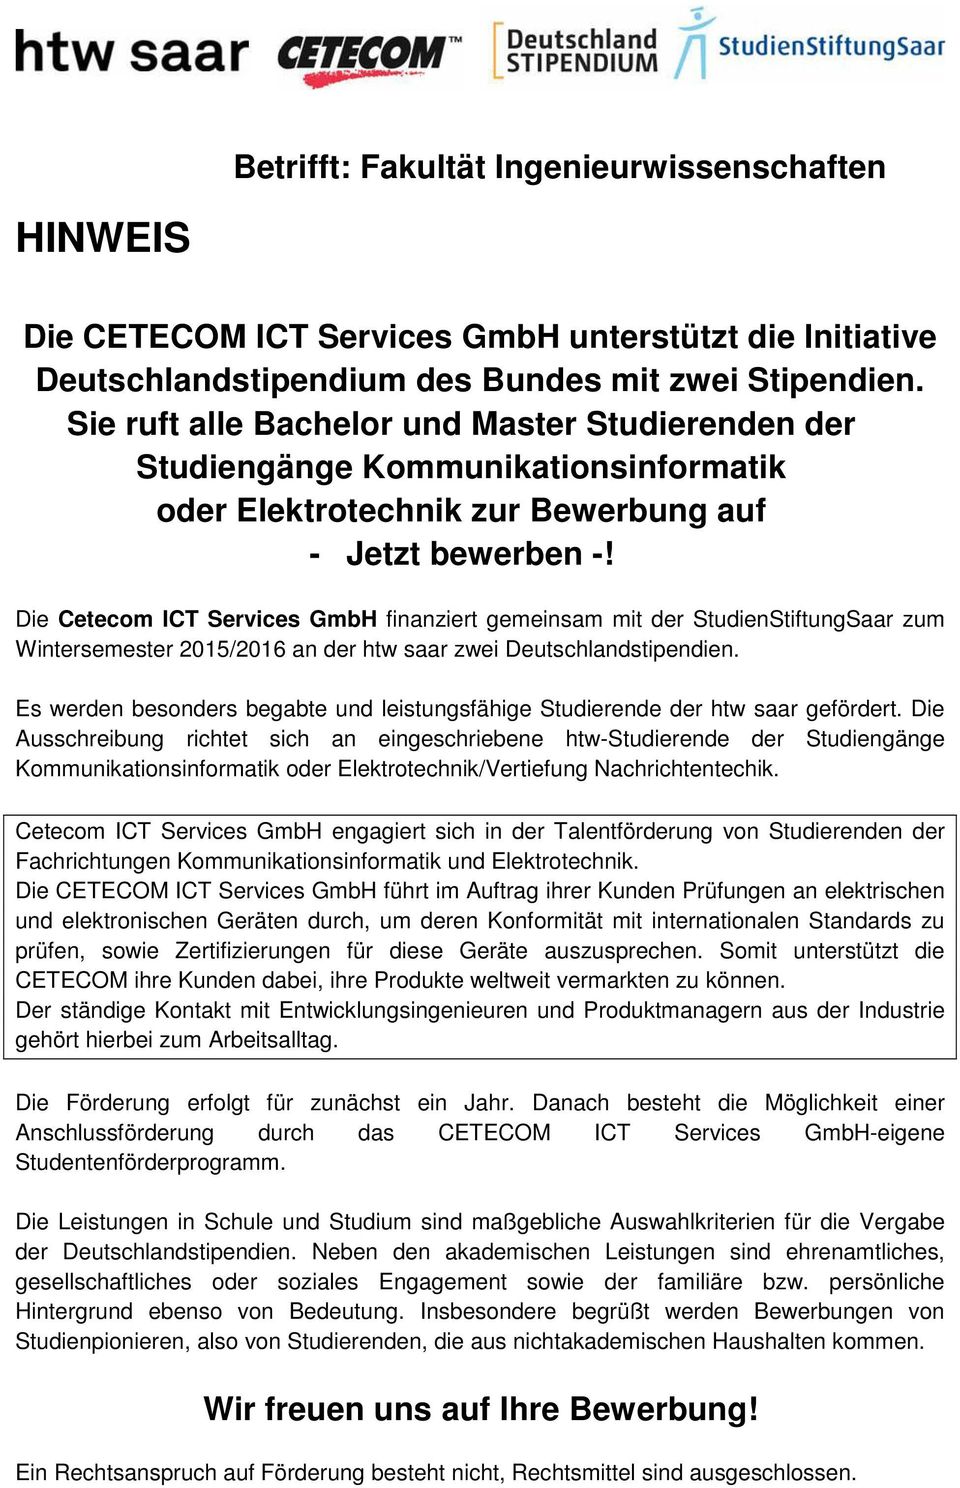 Die Cetecom ICT Services GmbH finanziert gemeinsam mit der StudienStiftungSaar zum Wintersemester 2015/2016 an der htw saar zwei Deutschlandstipendien.